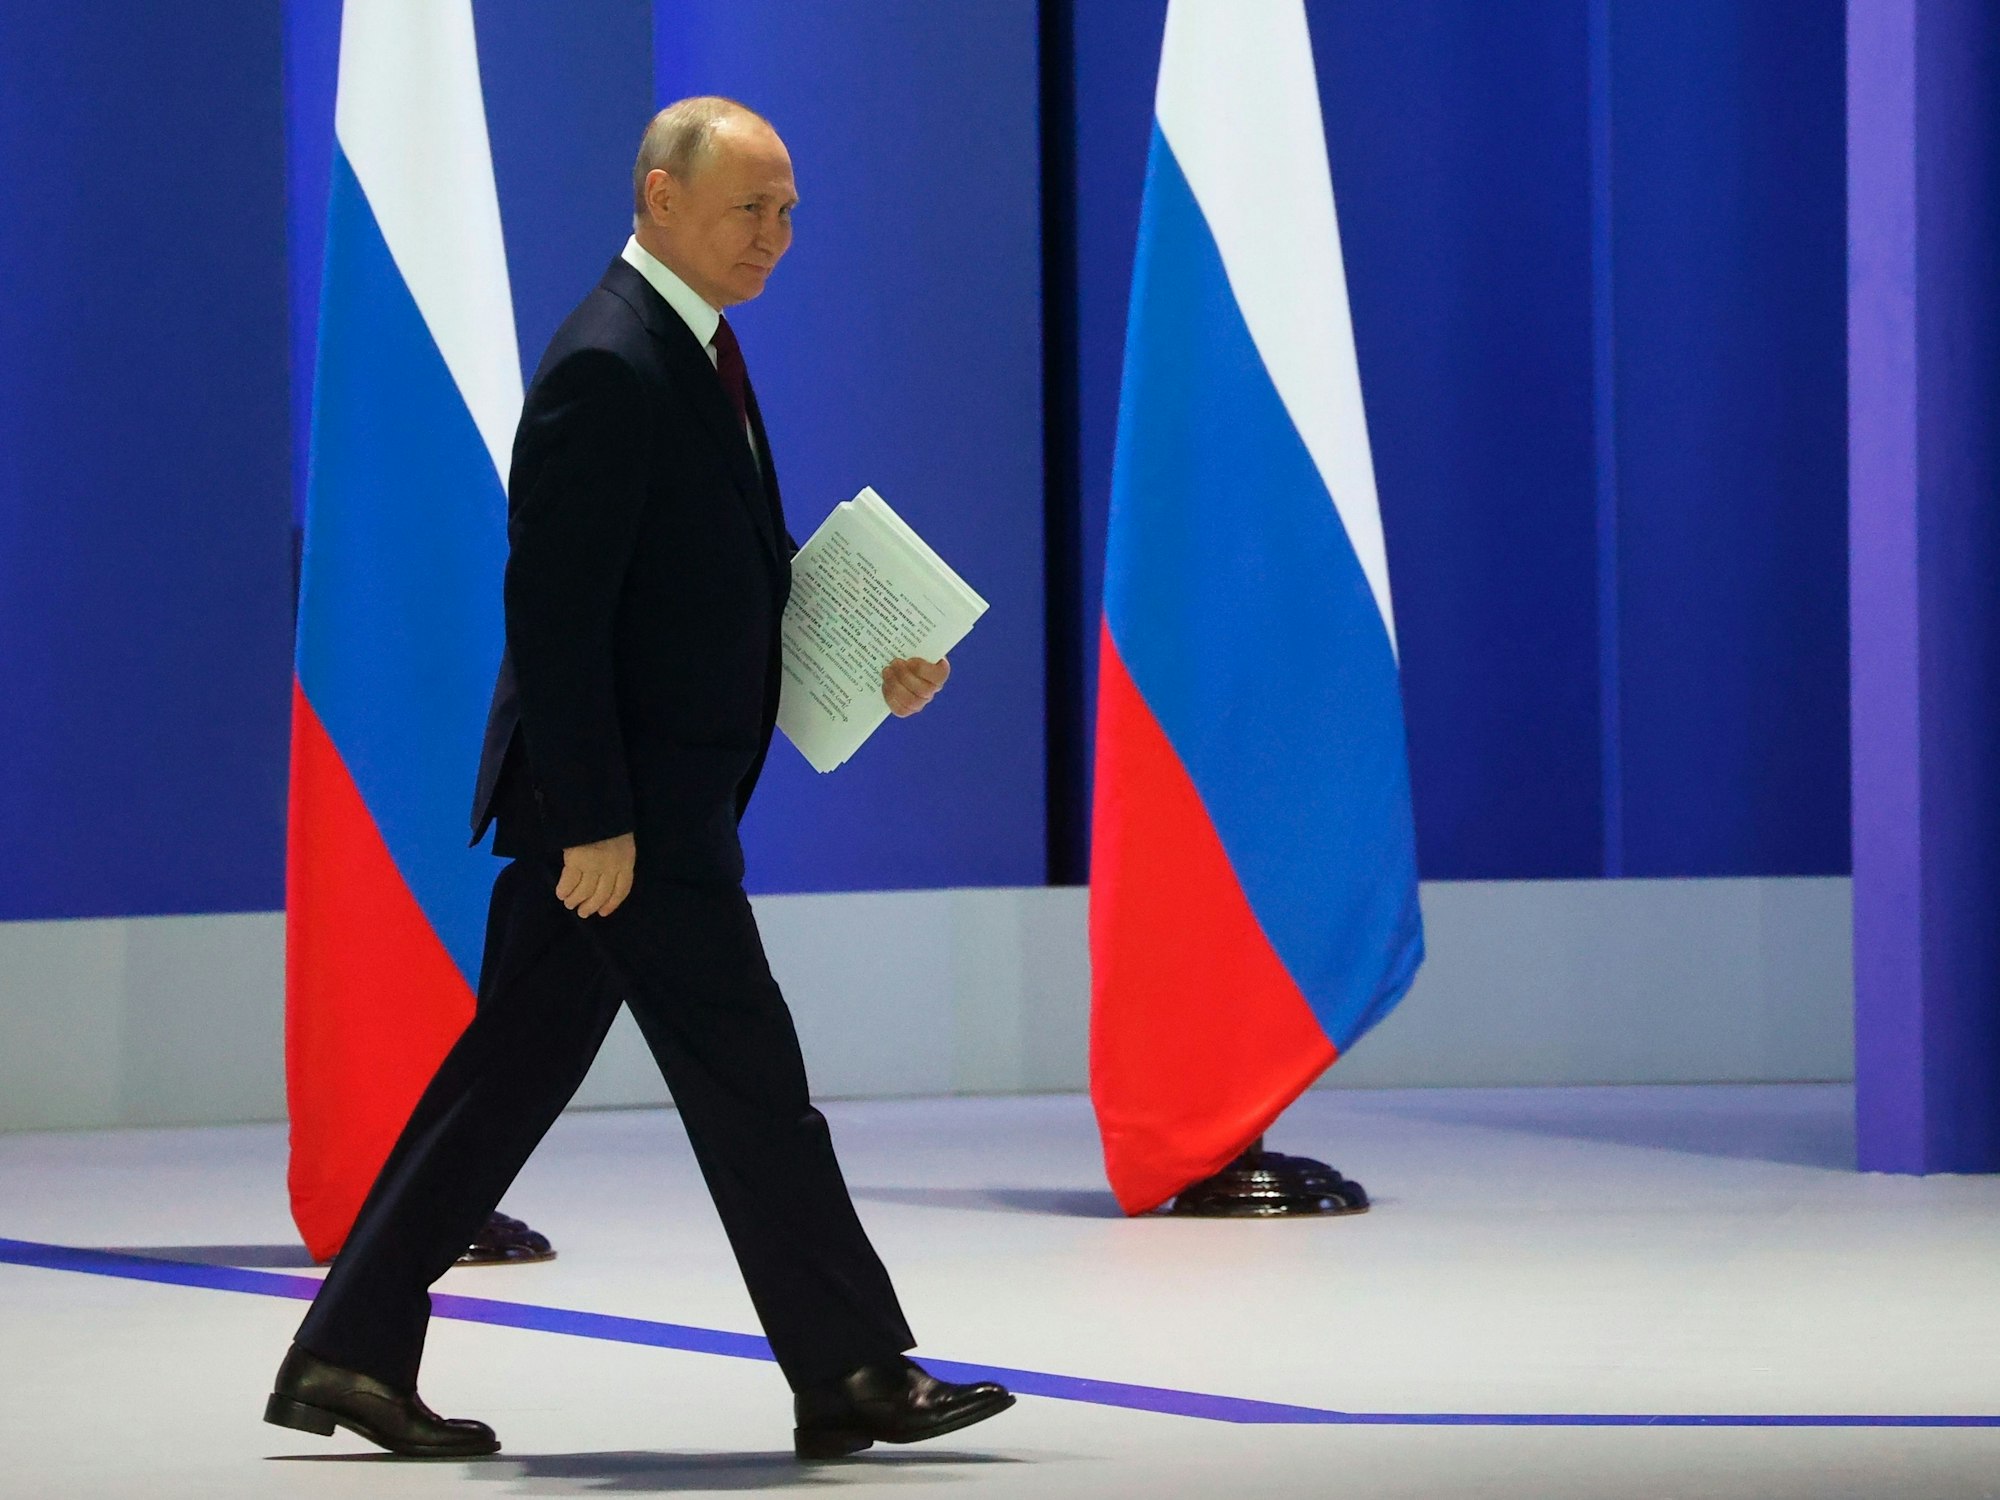 Der russische Präsident Wladimir Putin kommt mit Unterlagen unter demArm zu seiner jährlichen Rede zur Lage der Nation.